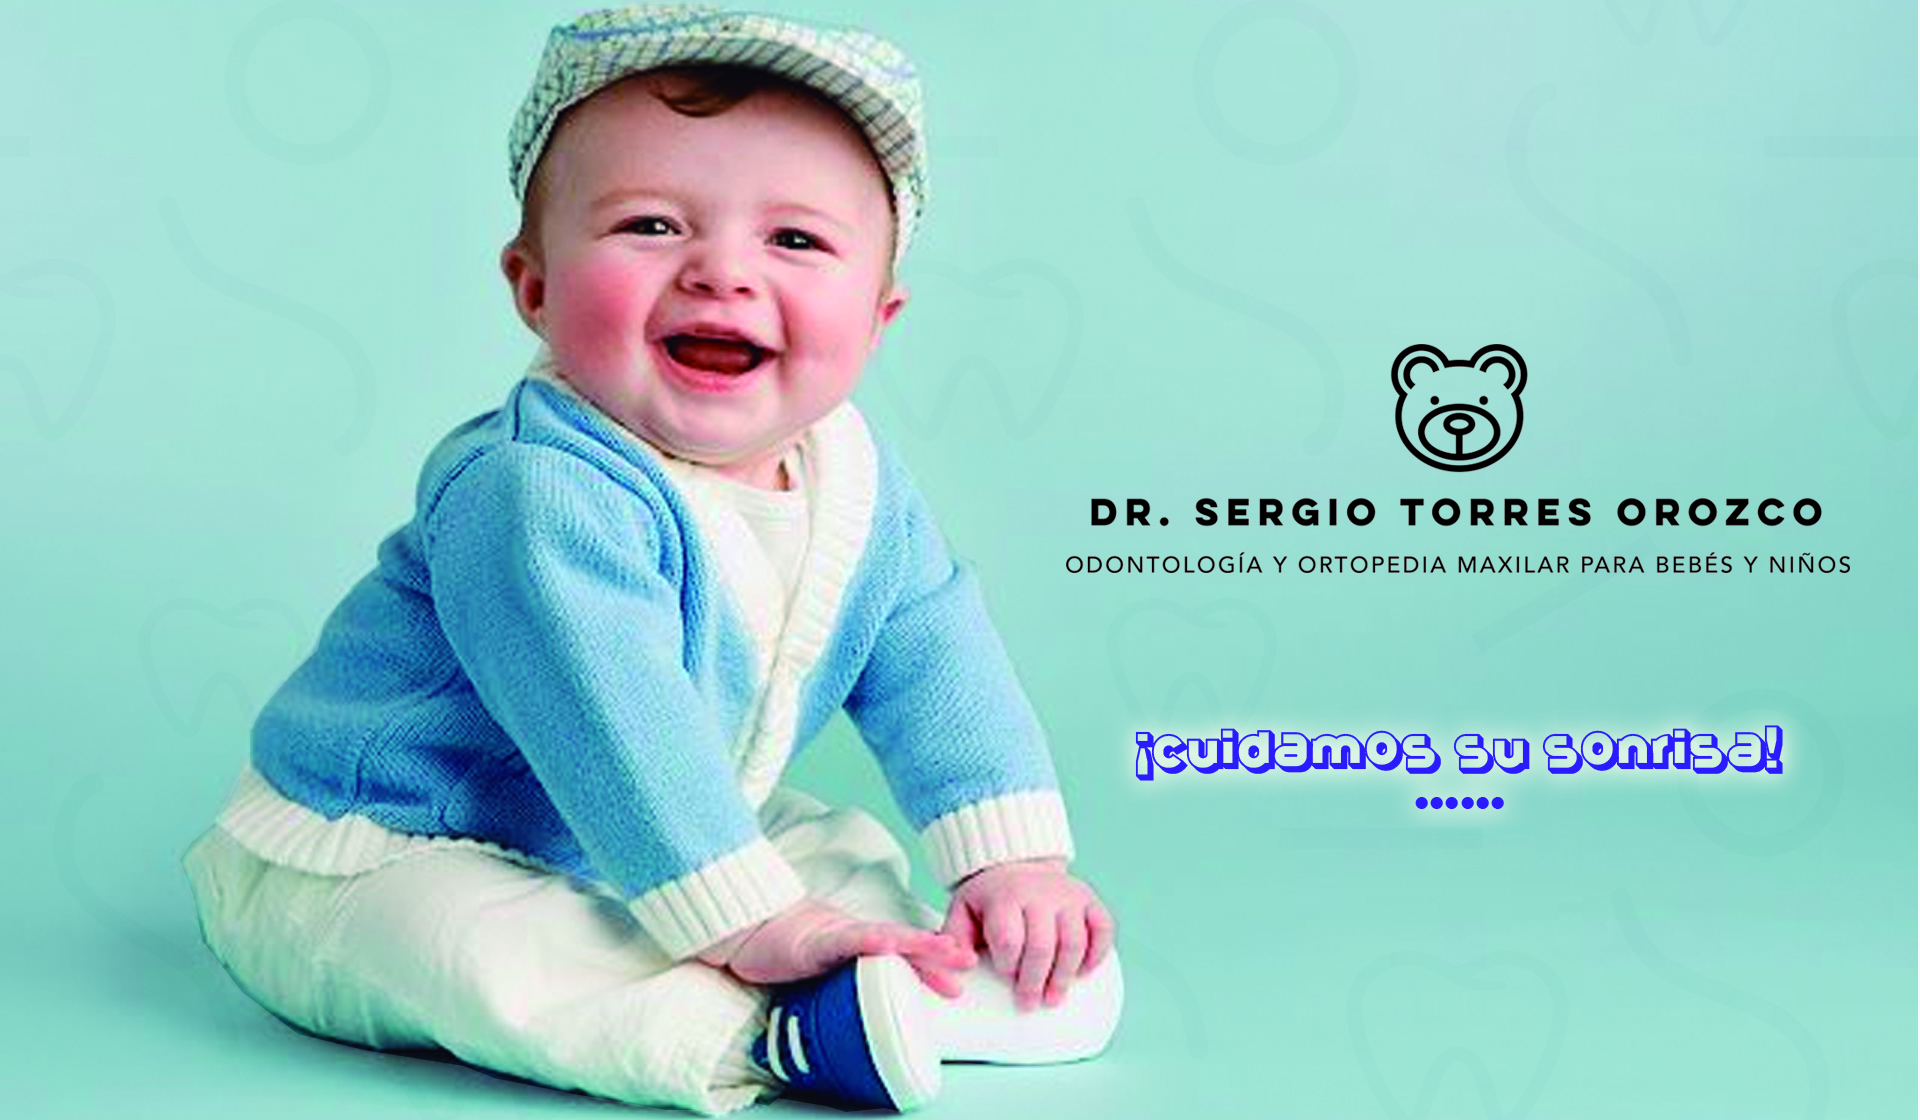 Dr. Sergio Torres Orozco, Odontología Maxilar para Bebés y Niños